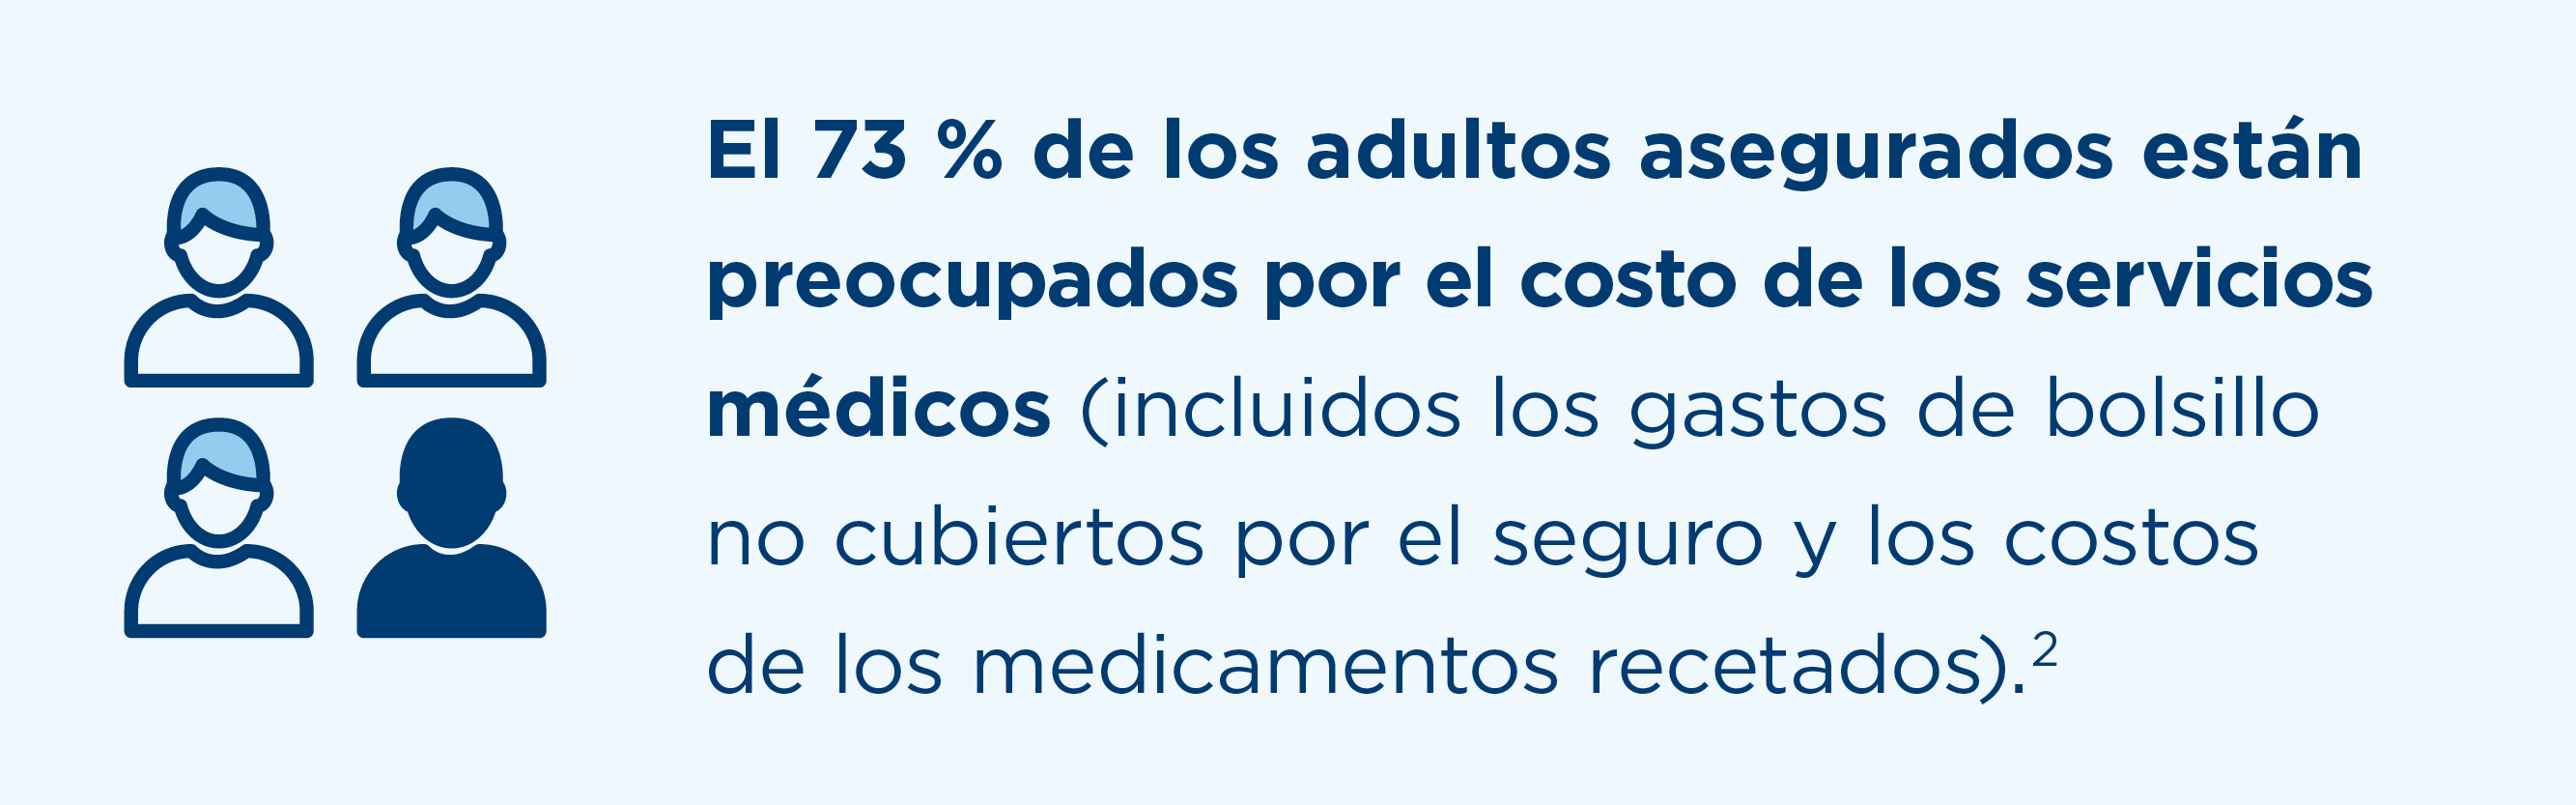 El 73 % de los adultos asegurados están preocupados por el costo de los servicios médicos (incluidos los gastos de bolsillo no cubiertos por el seguro y los costos de los medicamentos recetados). Consulte la nota al pie 2 